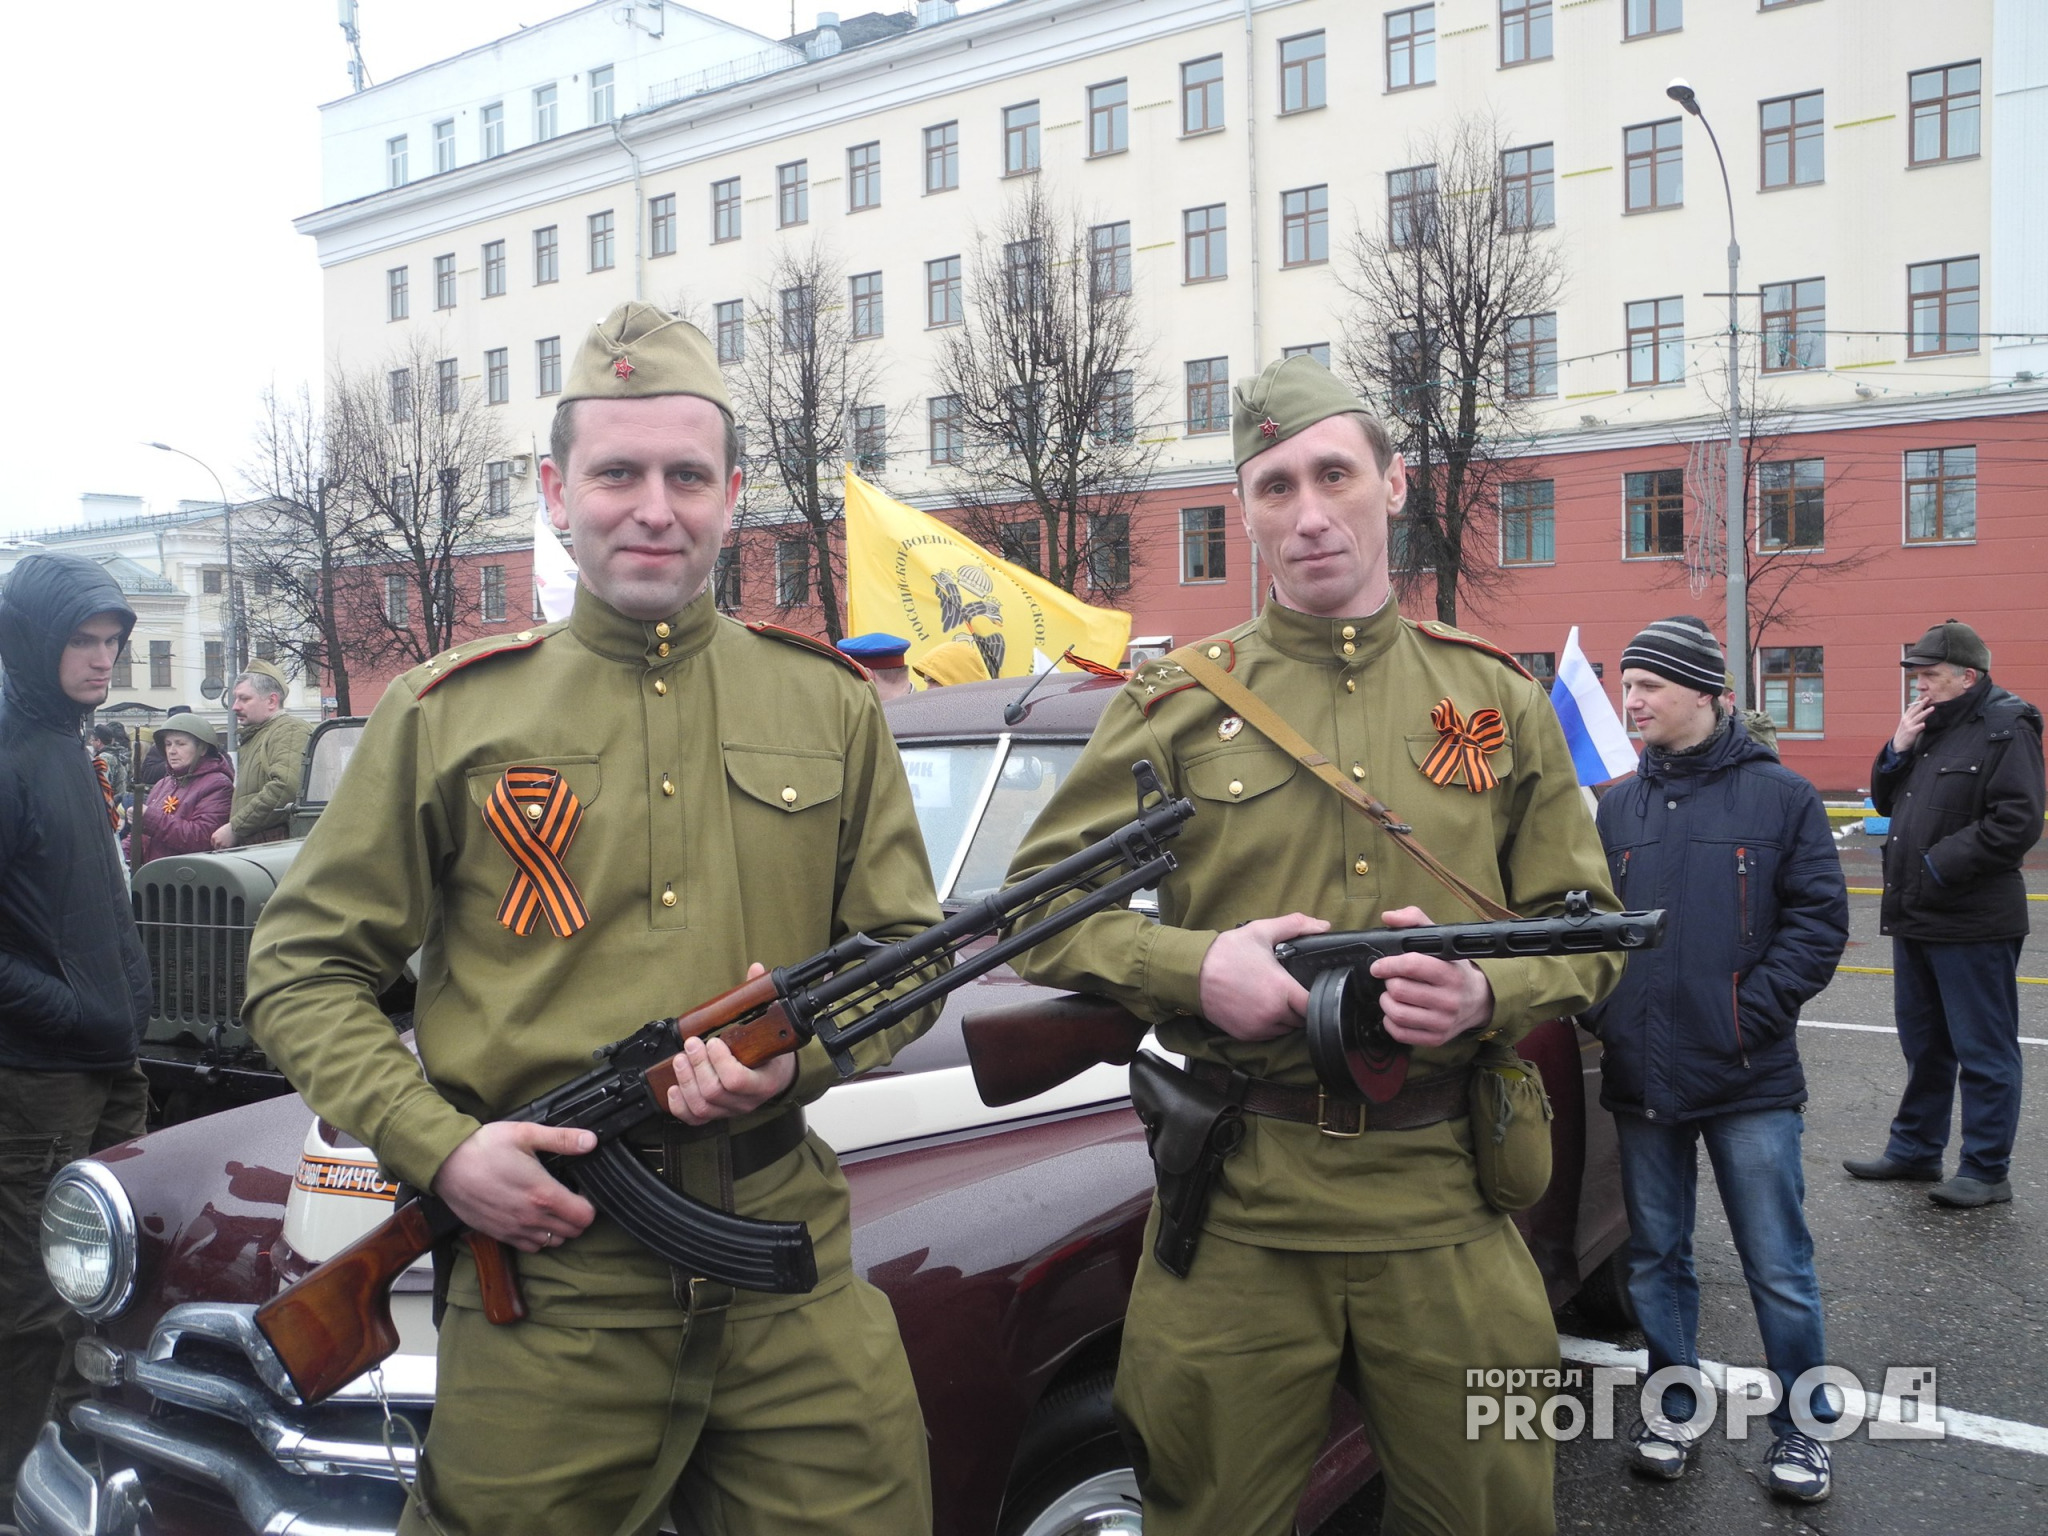 Фоторепортаж: в Кирове прошел парад ретроавтомобилей